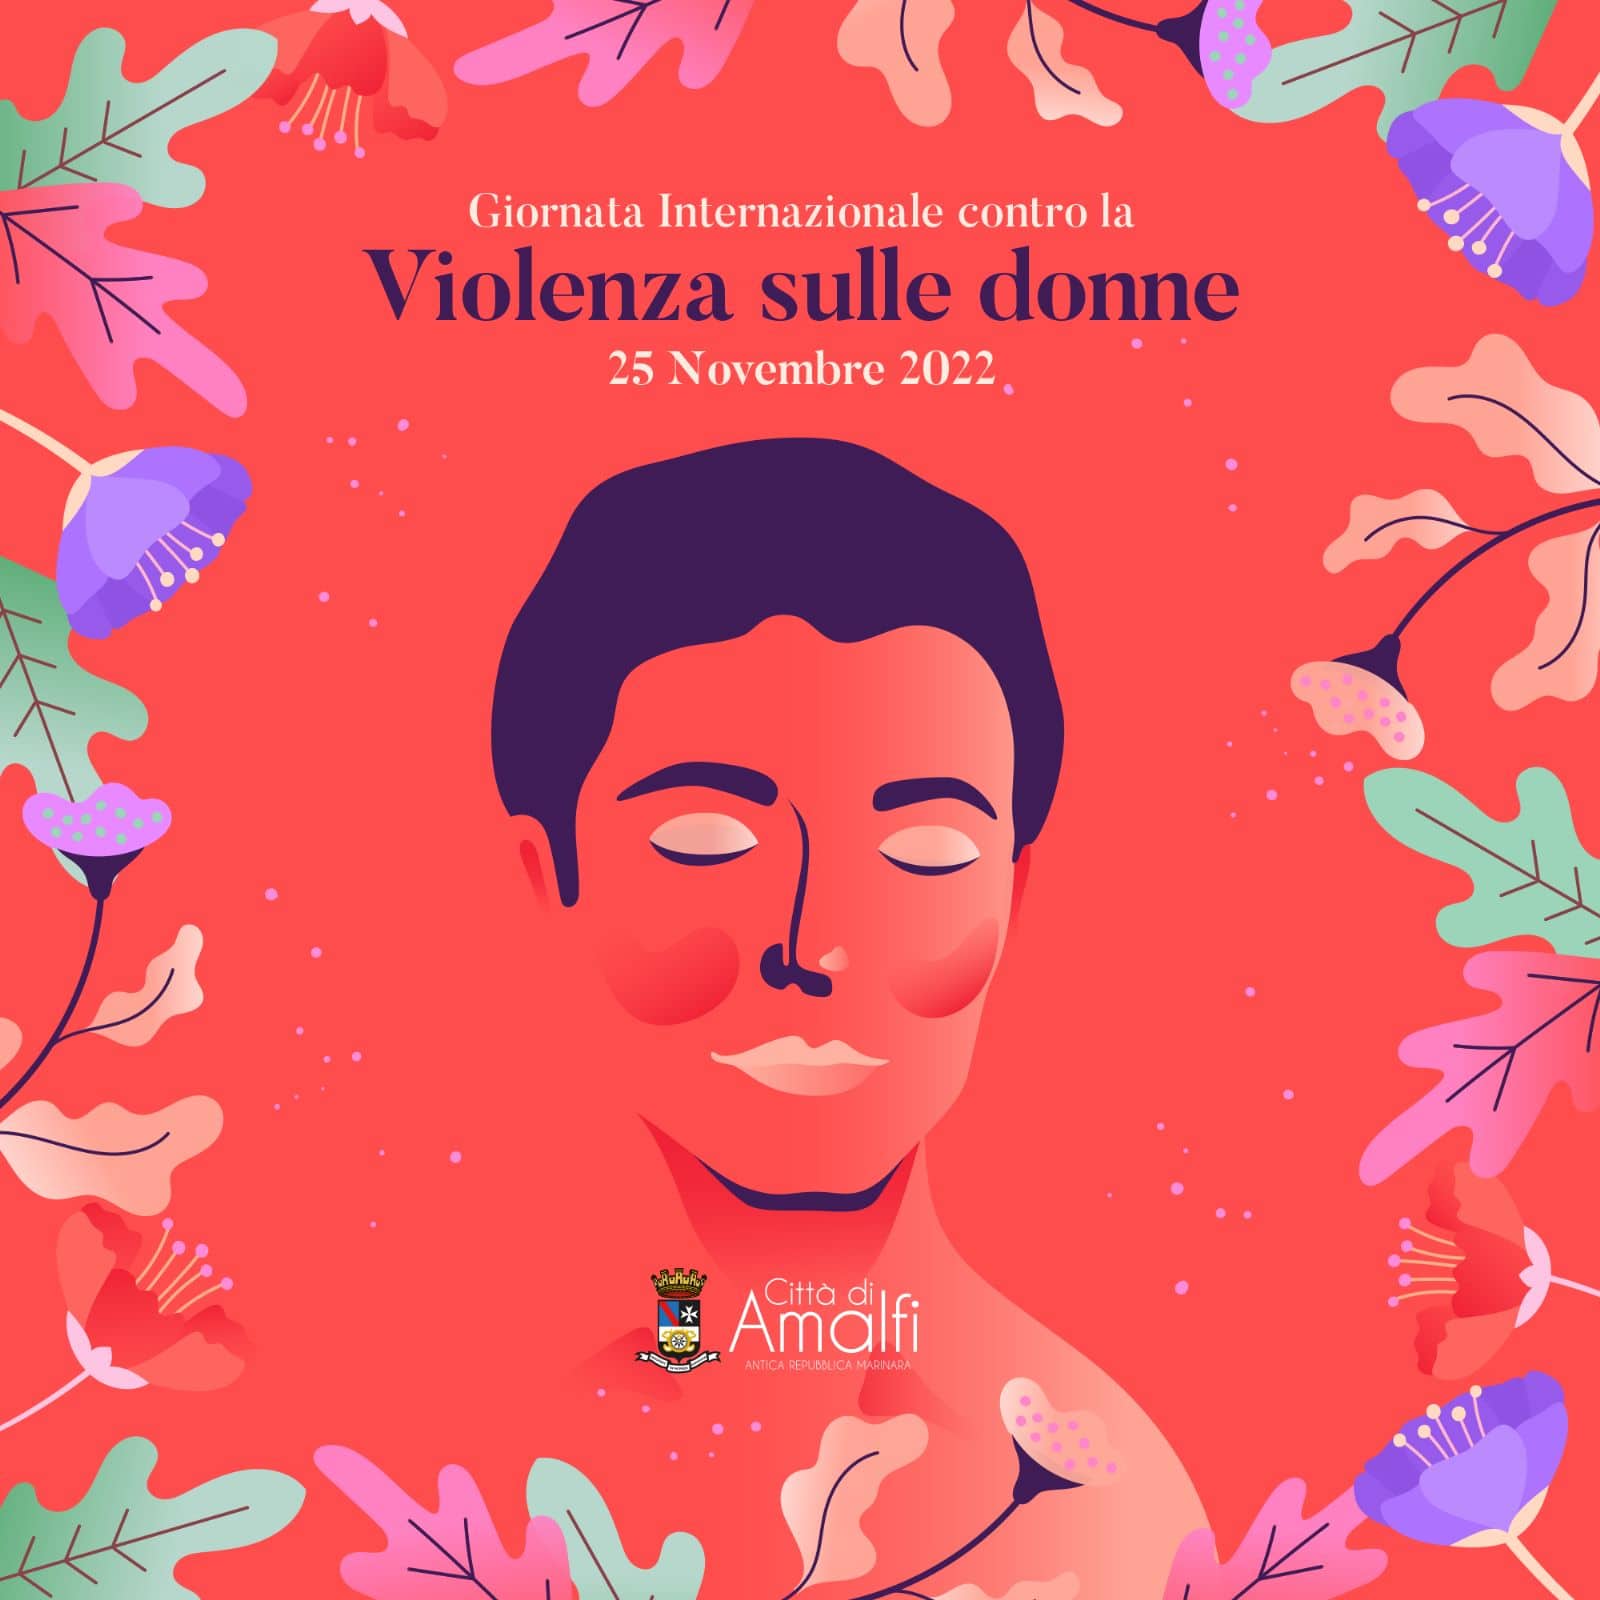 Amalfi: Duomo s’ illumina di rosso per Giornata Internazionale contro violenza sulle donne